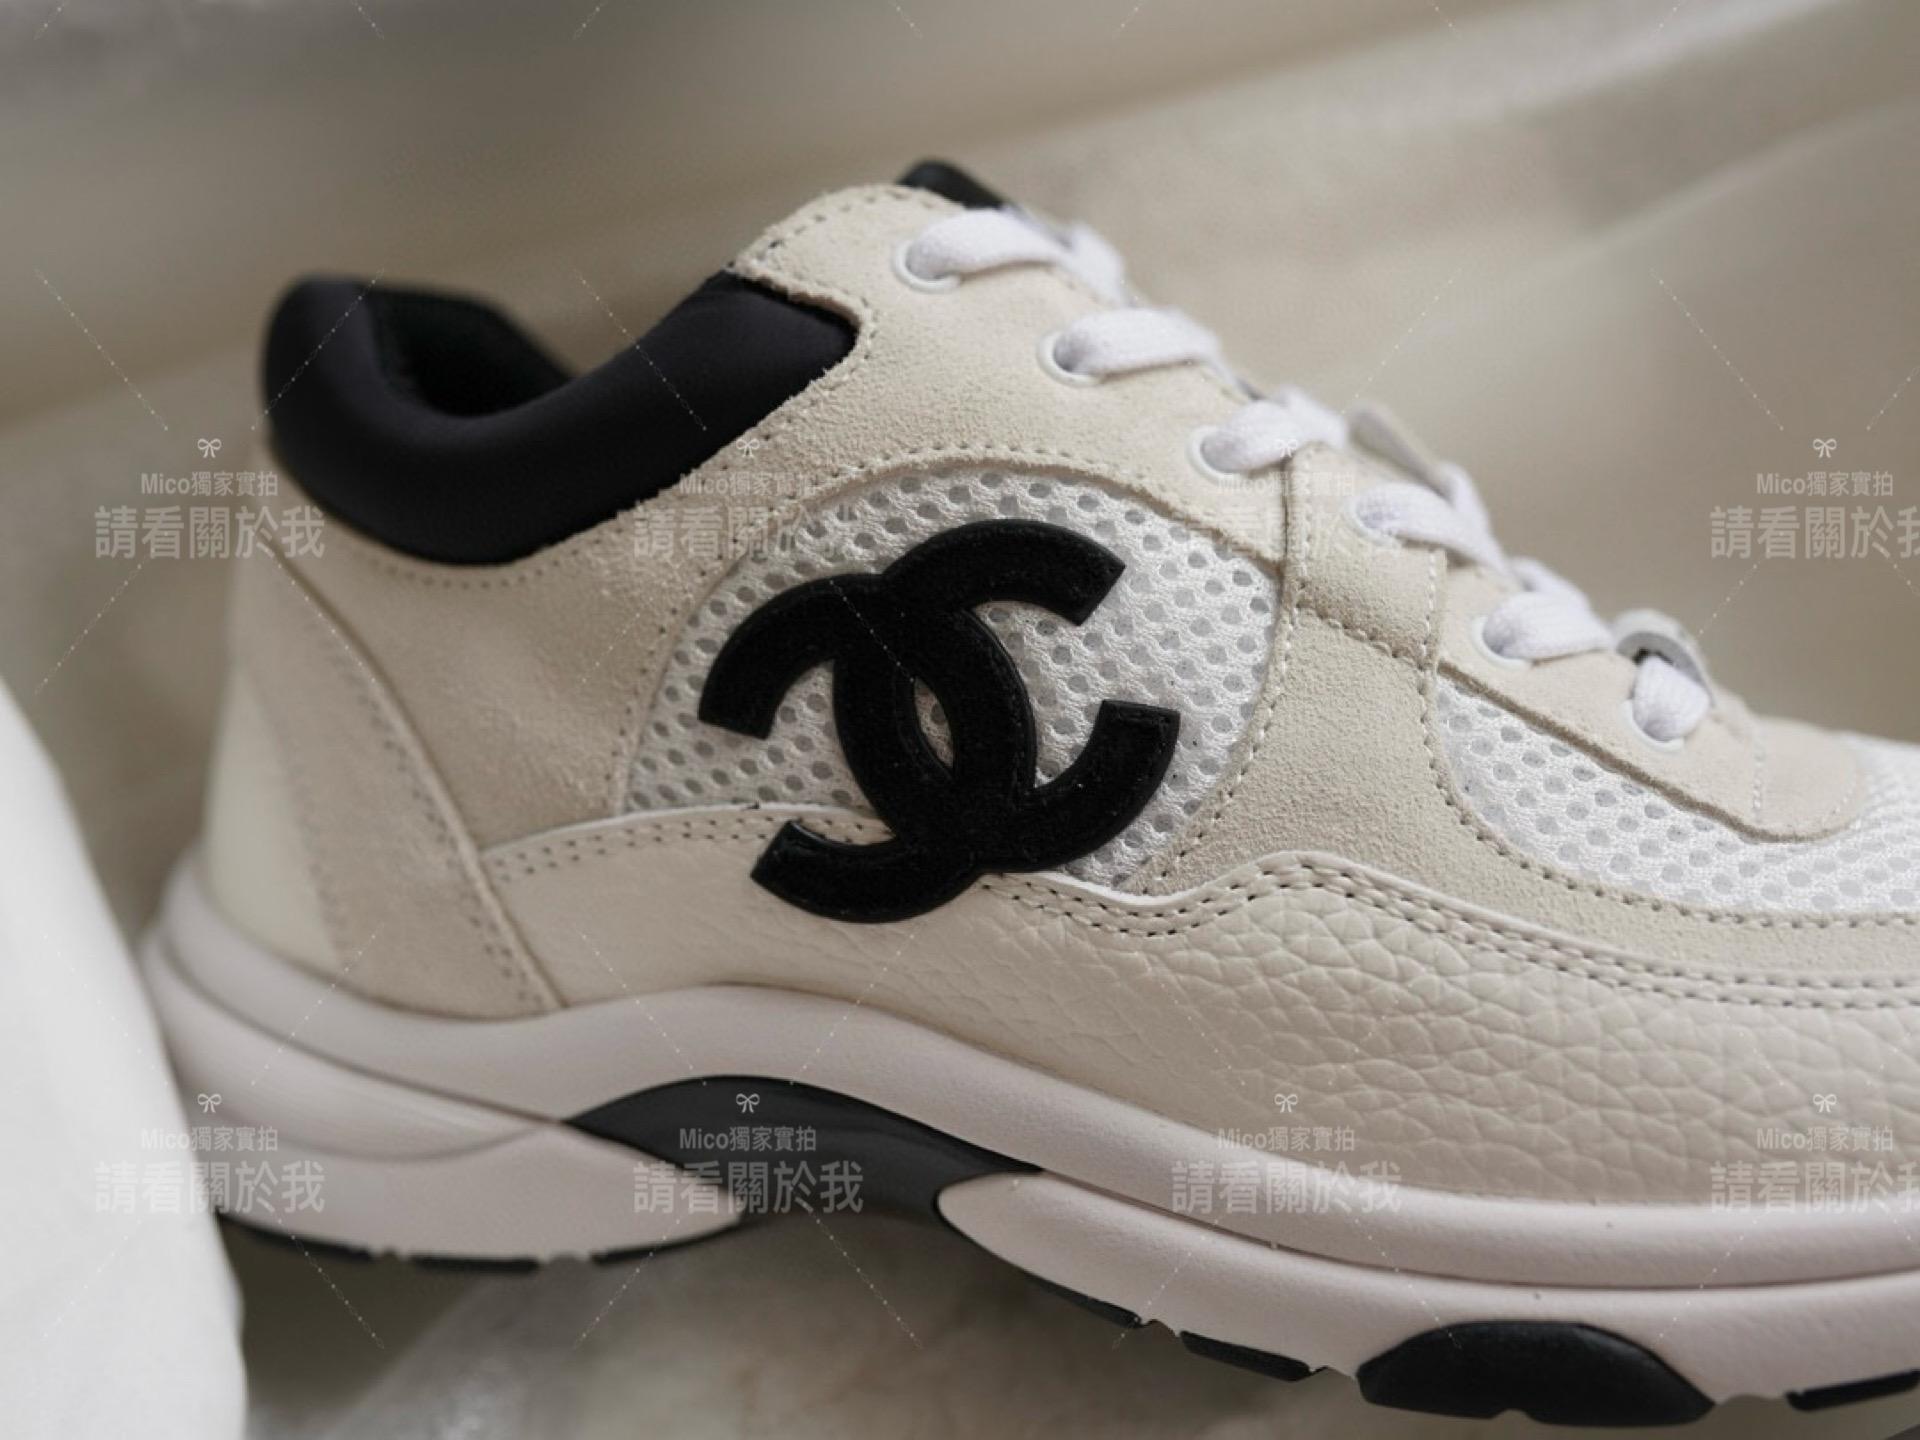 Chanel 經典款 百搭黑白拼色網面休閒小白鞋 經典的熊貓配色 35-40